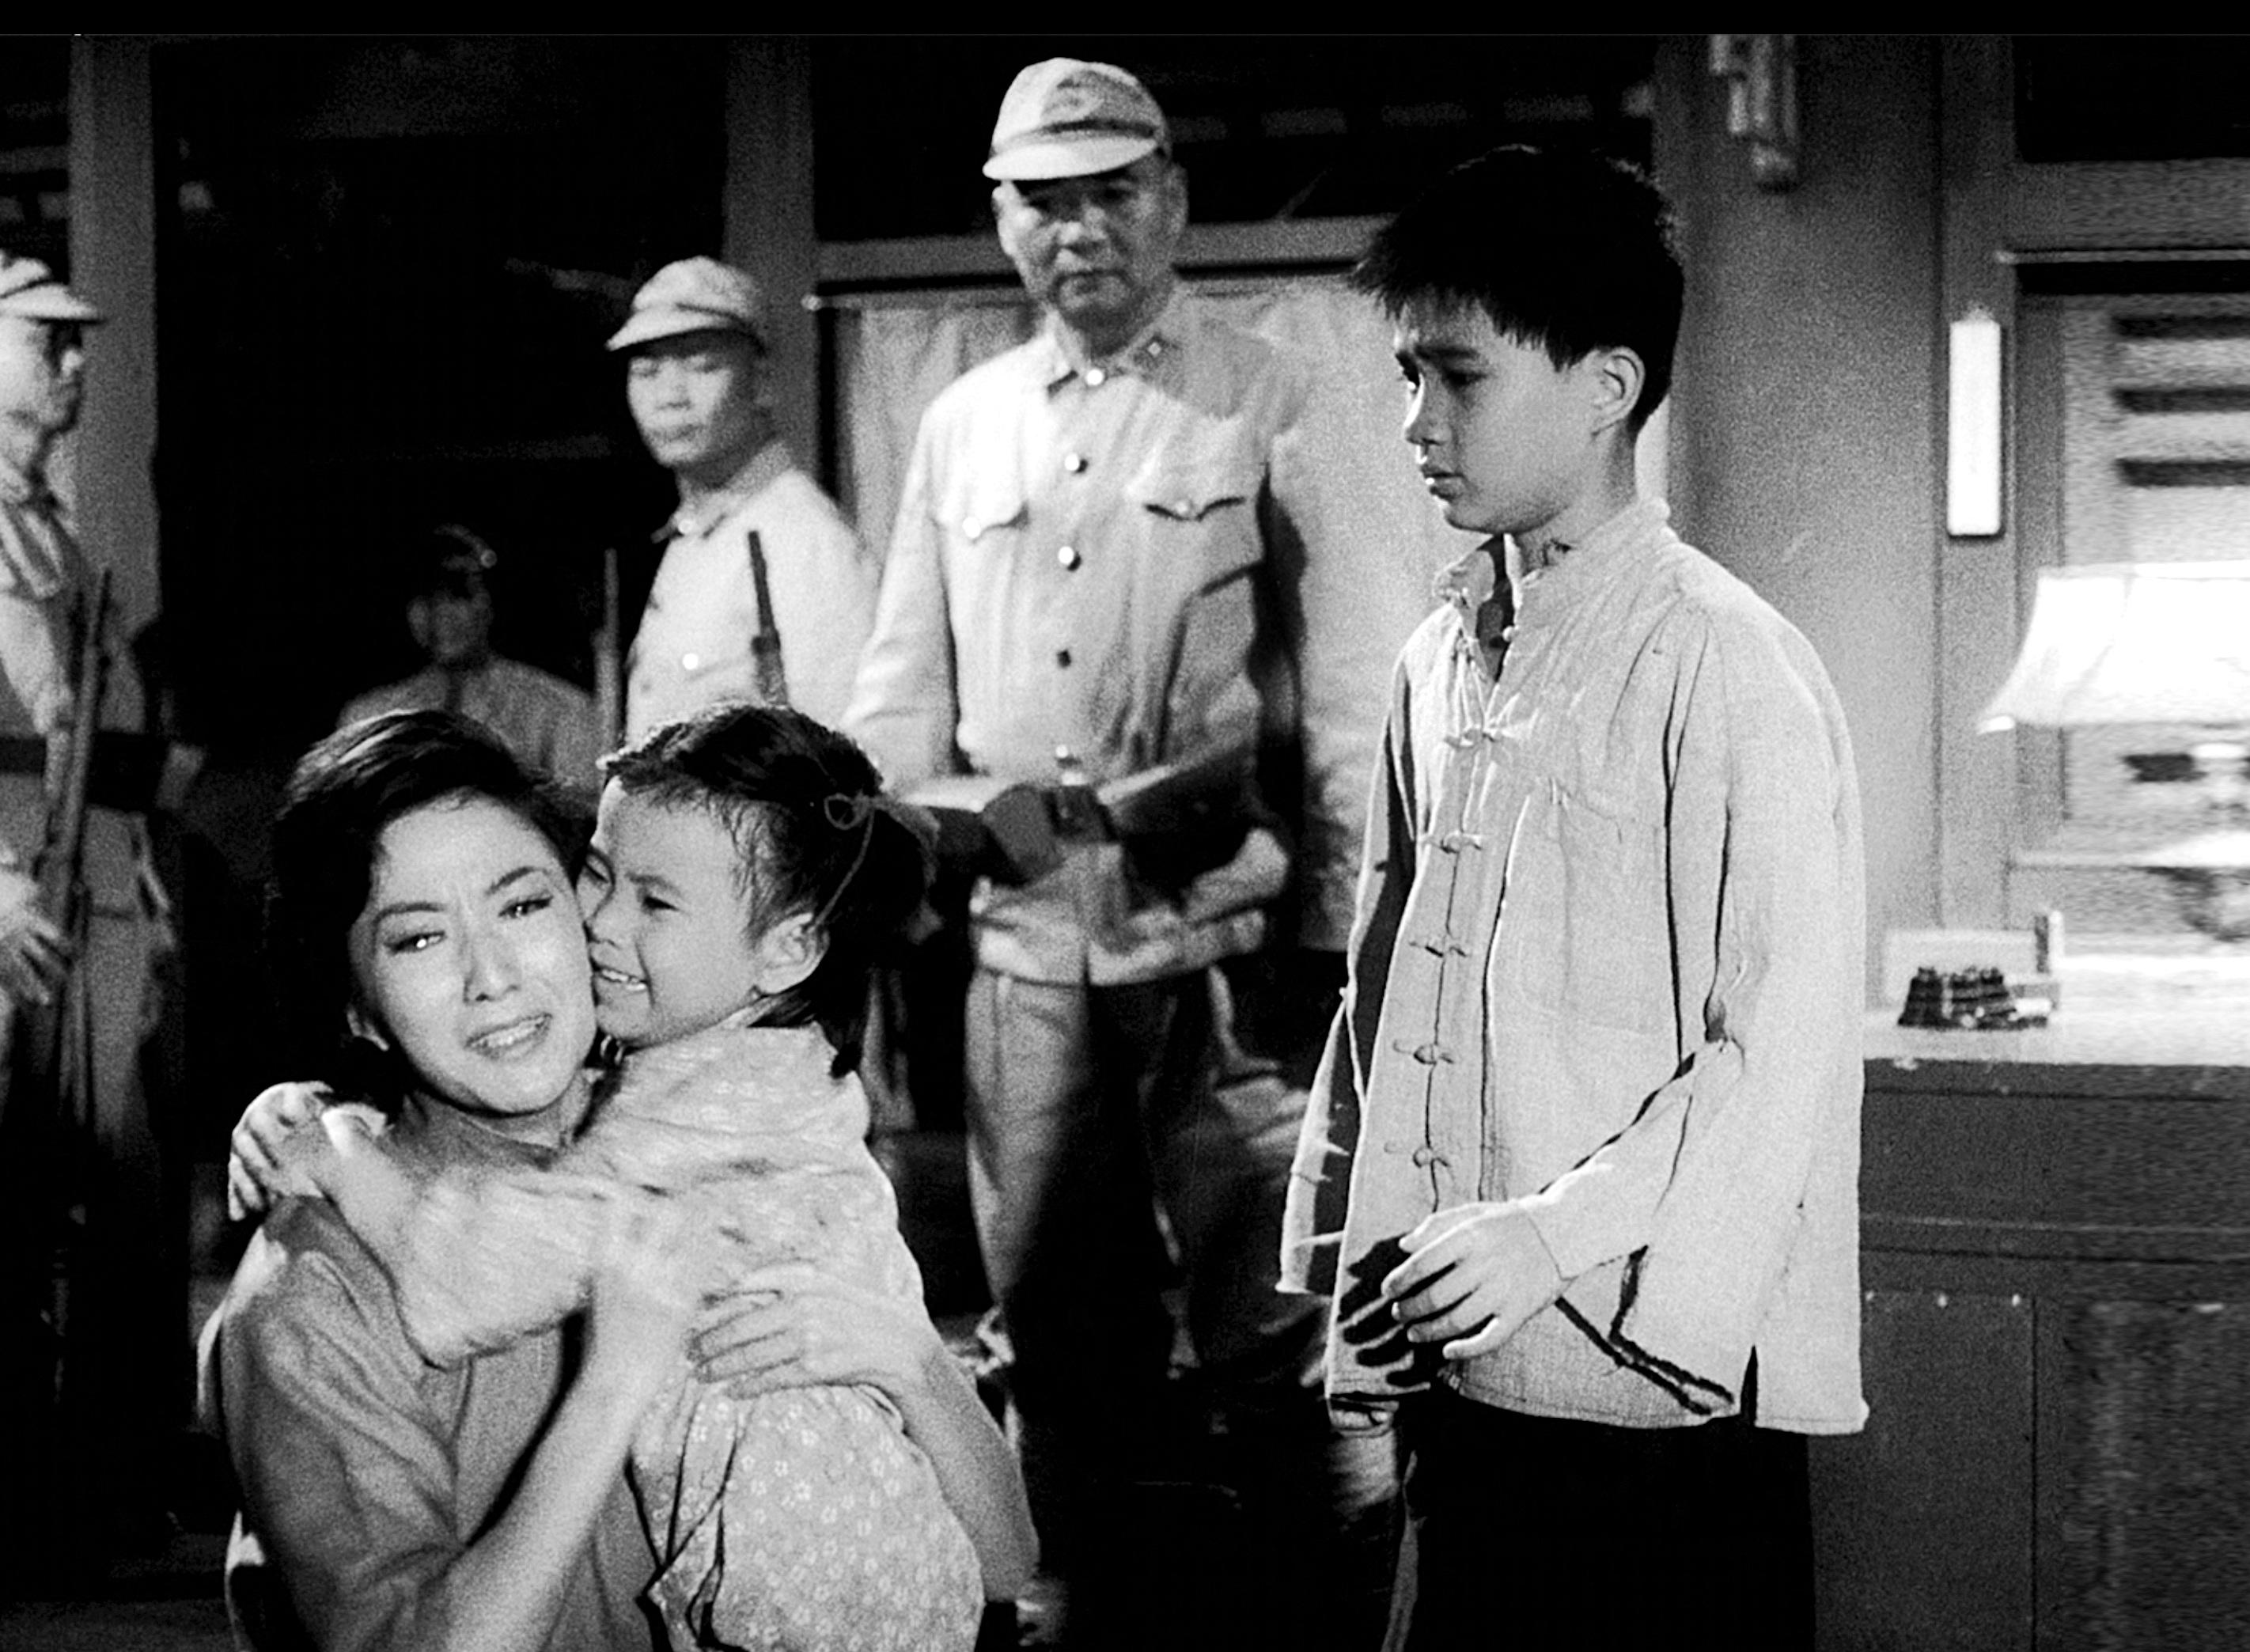 康樂及文化事務署香港電影資料館的「瑰寶情尋」系列在十二月至明年五月以「聲影『留』傳II」為題隆重登場，期間每月的首個星期日將放映兩套主題相近但在不同年代製作的電影，讓觀眾透過電影跨越時空，見證不同年代電影人的感悟和省思。圖示《烽火孤鴻》（1967）劇照。
